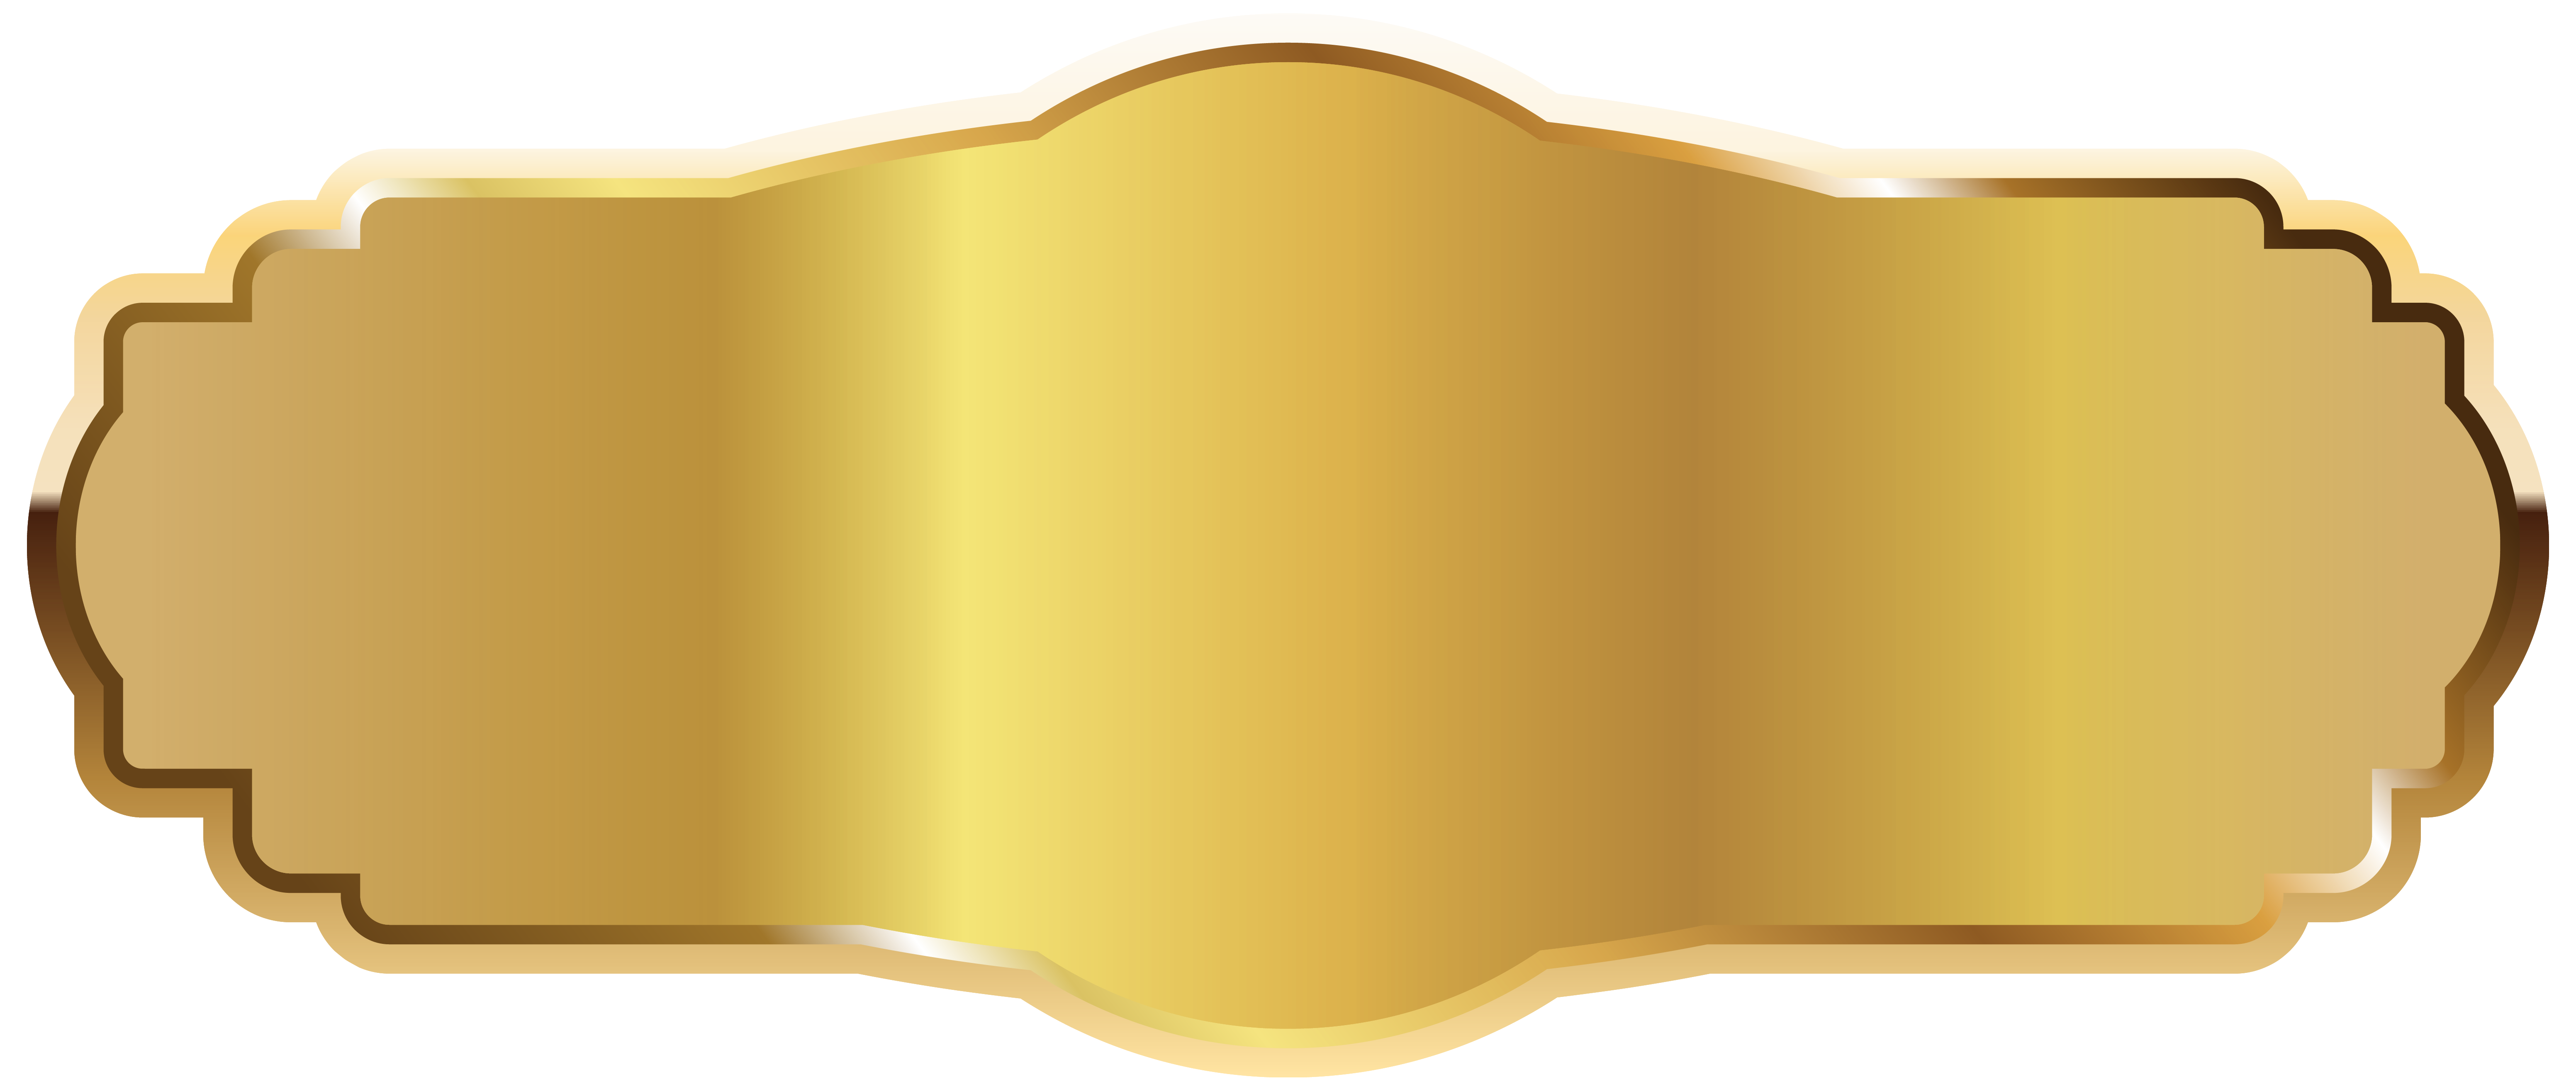 Plaque golden